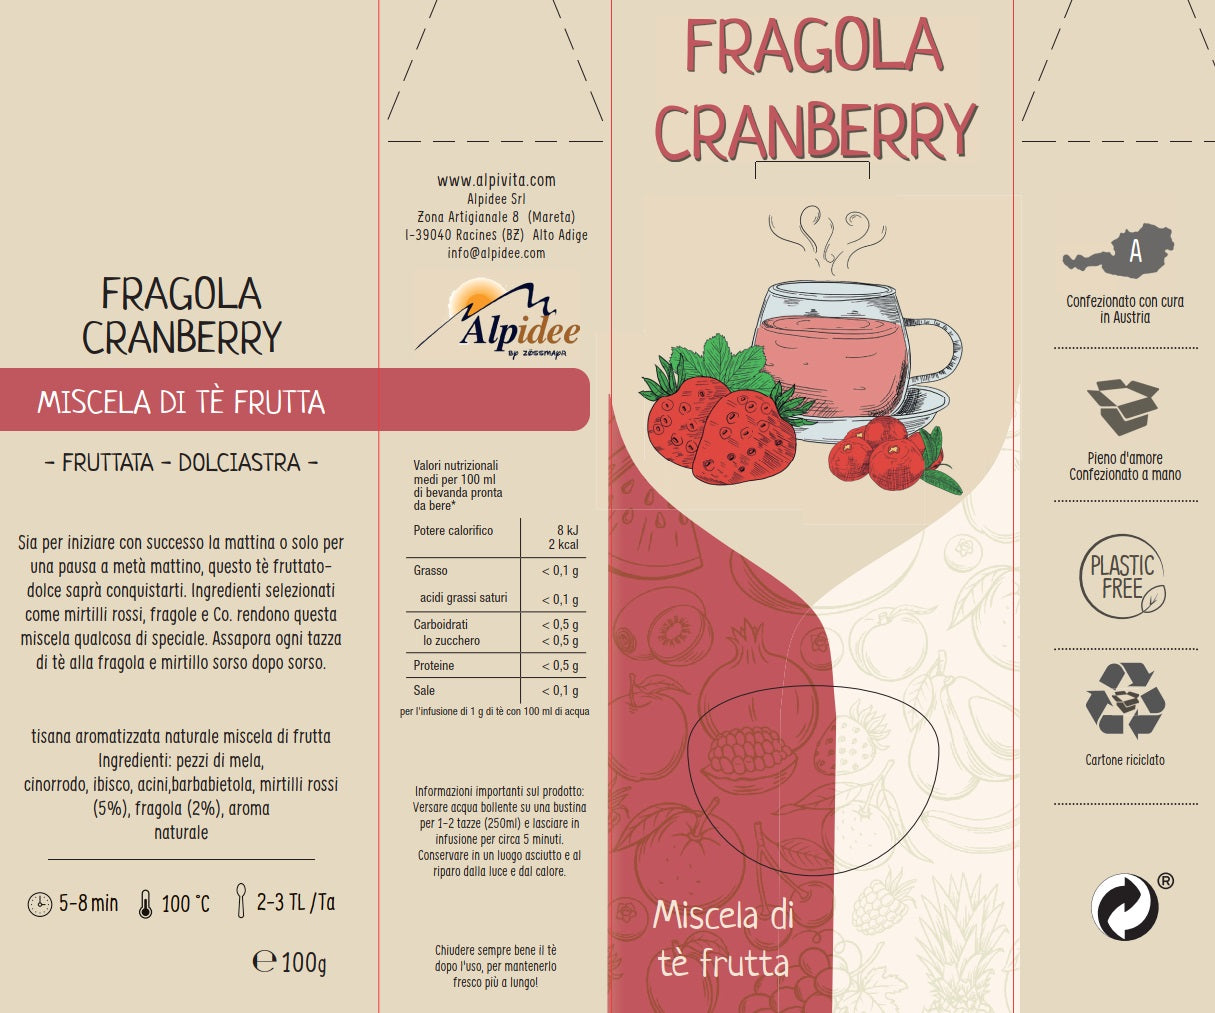 Miscela di tè frutta FRAGOLA CRANBERRY, fruttato, dolciastro, 100g